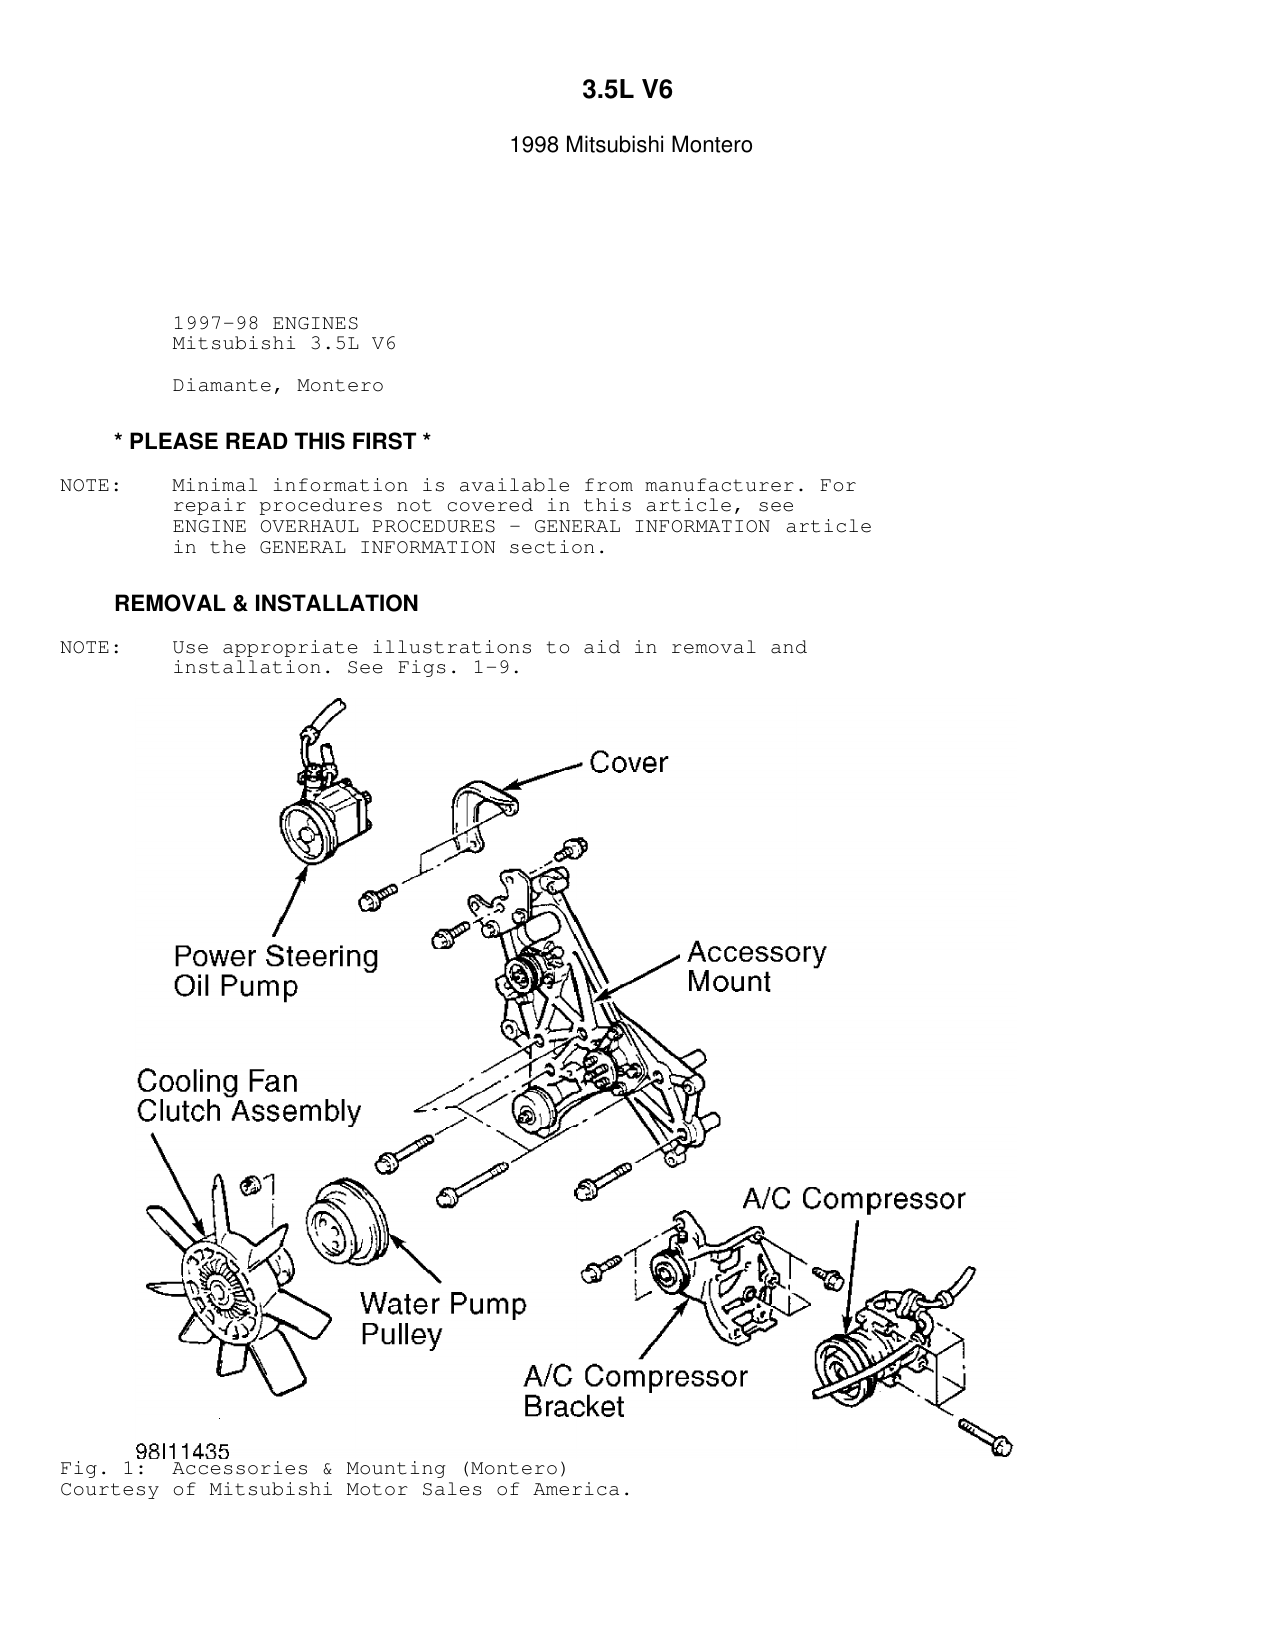 1998 Mitsubishi Montero repair manual Preview image 6